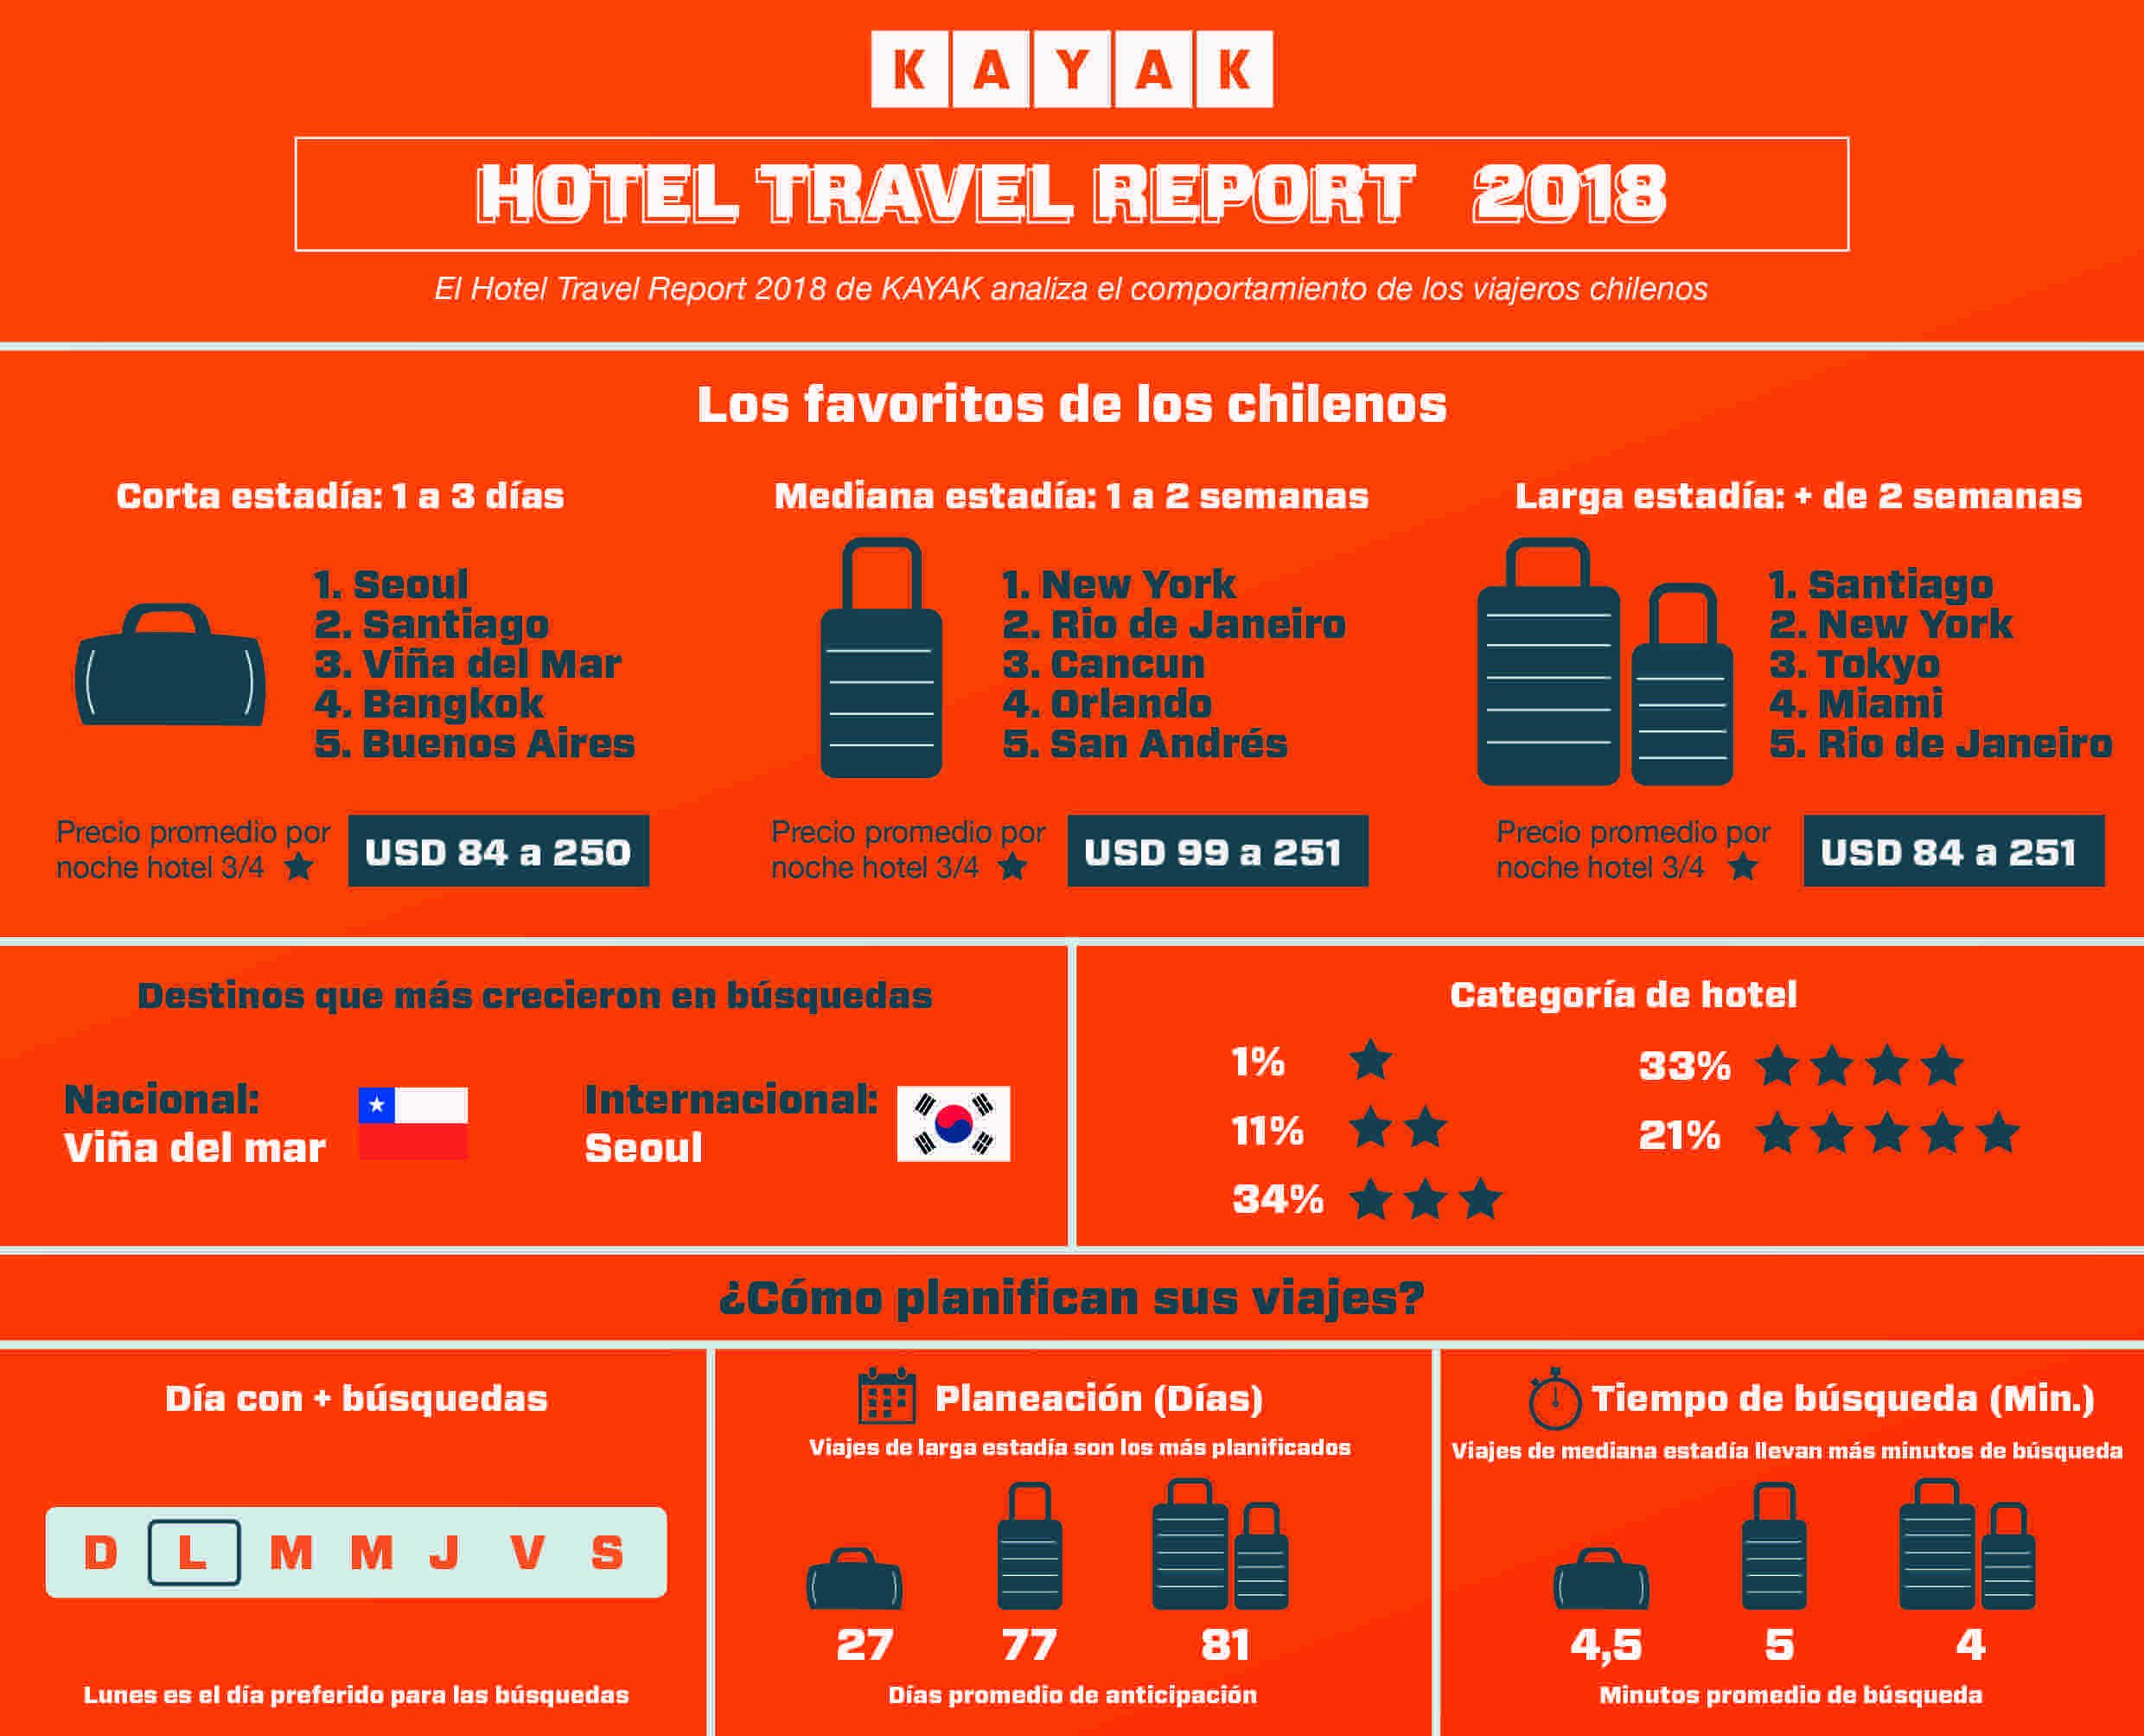 Hotel Travel Report Chile 2018: Hoteles de 3 y 4 estrellas son los más buscados por los chilenos